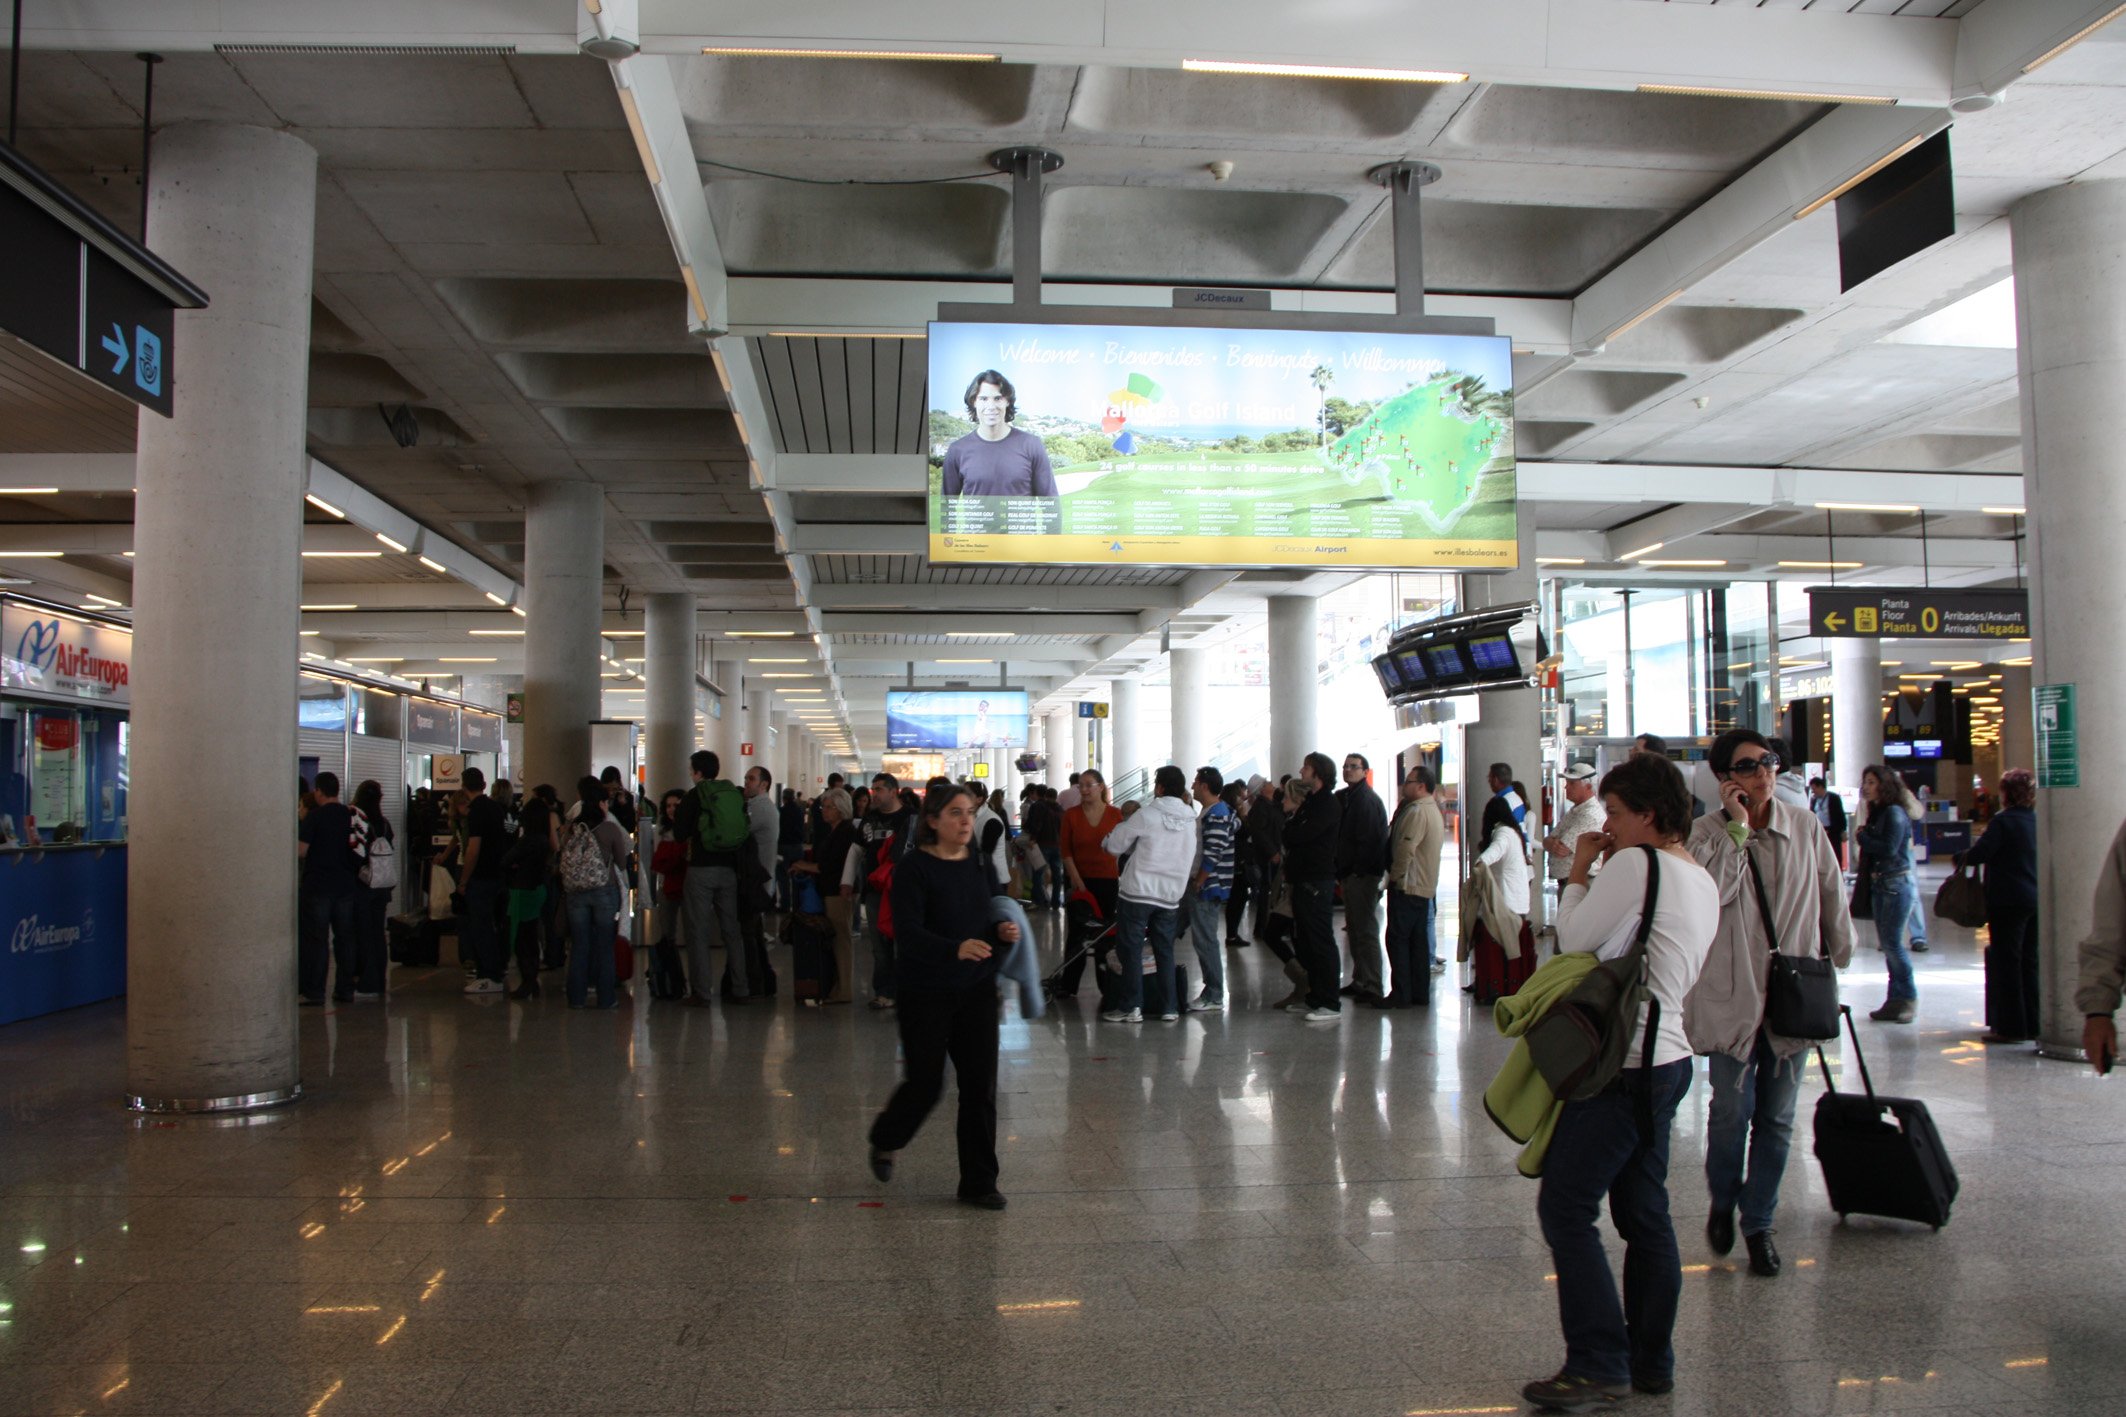 El aeropuerto de Palma se llamará Aeropuerto Internacional Ramon Llull